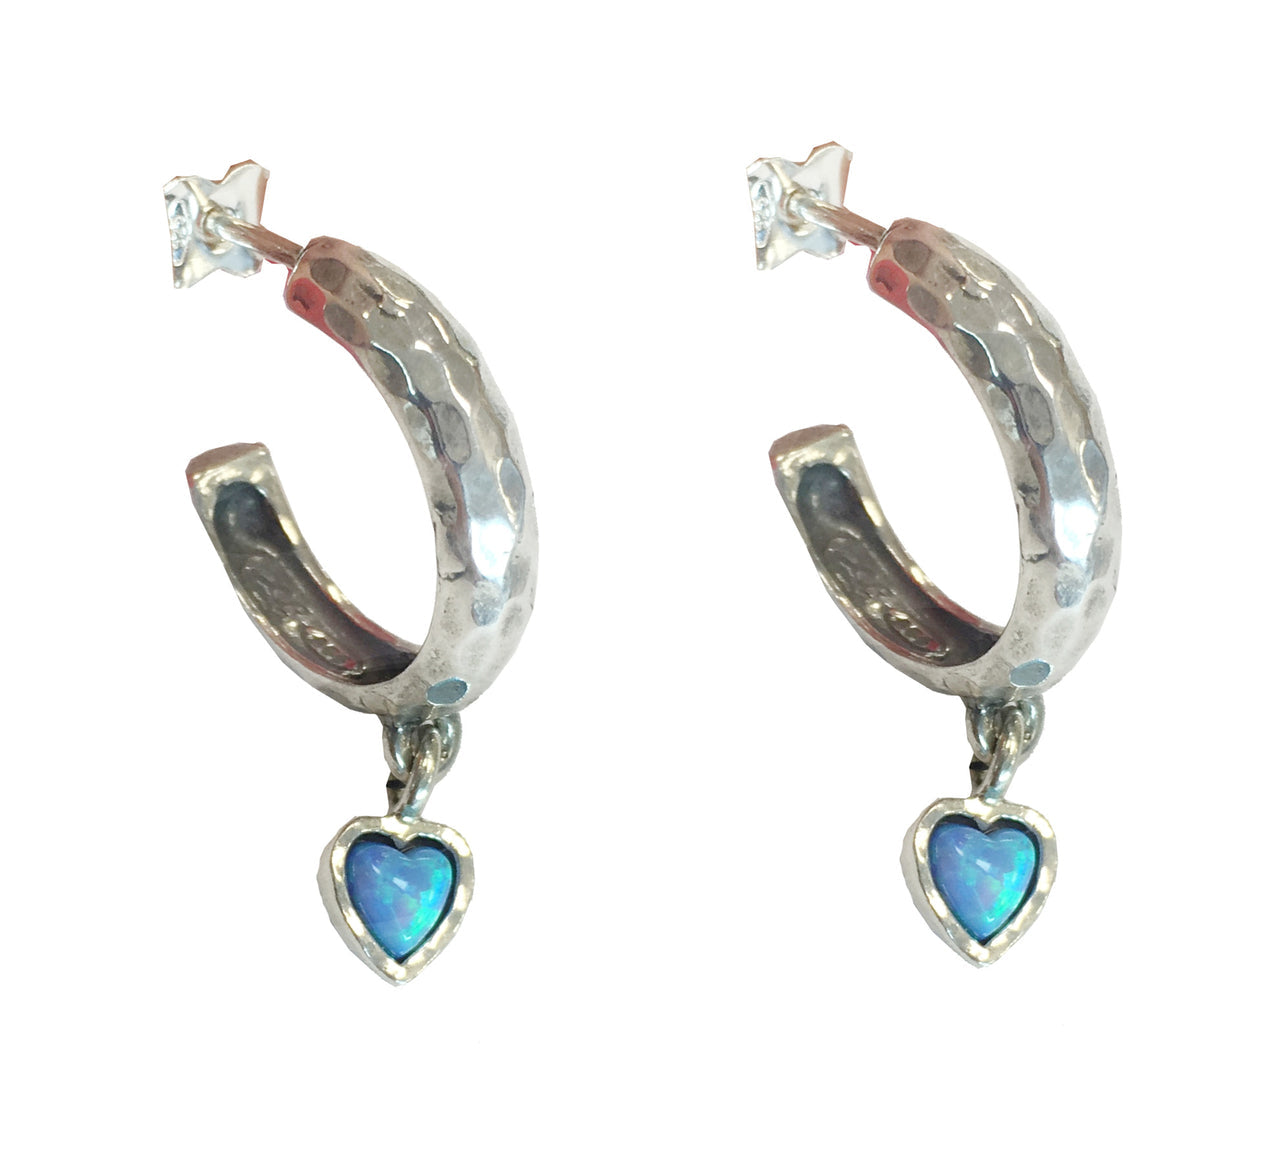 Opal Heart Hoop Earrings - The Nancy Smillie Shop - Art, Jewellery & Designer Gifts Glasgow